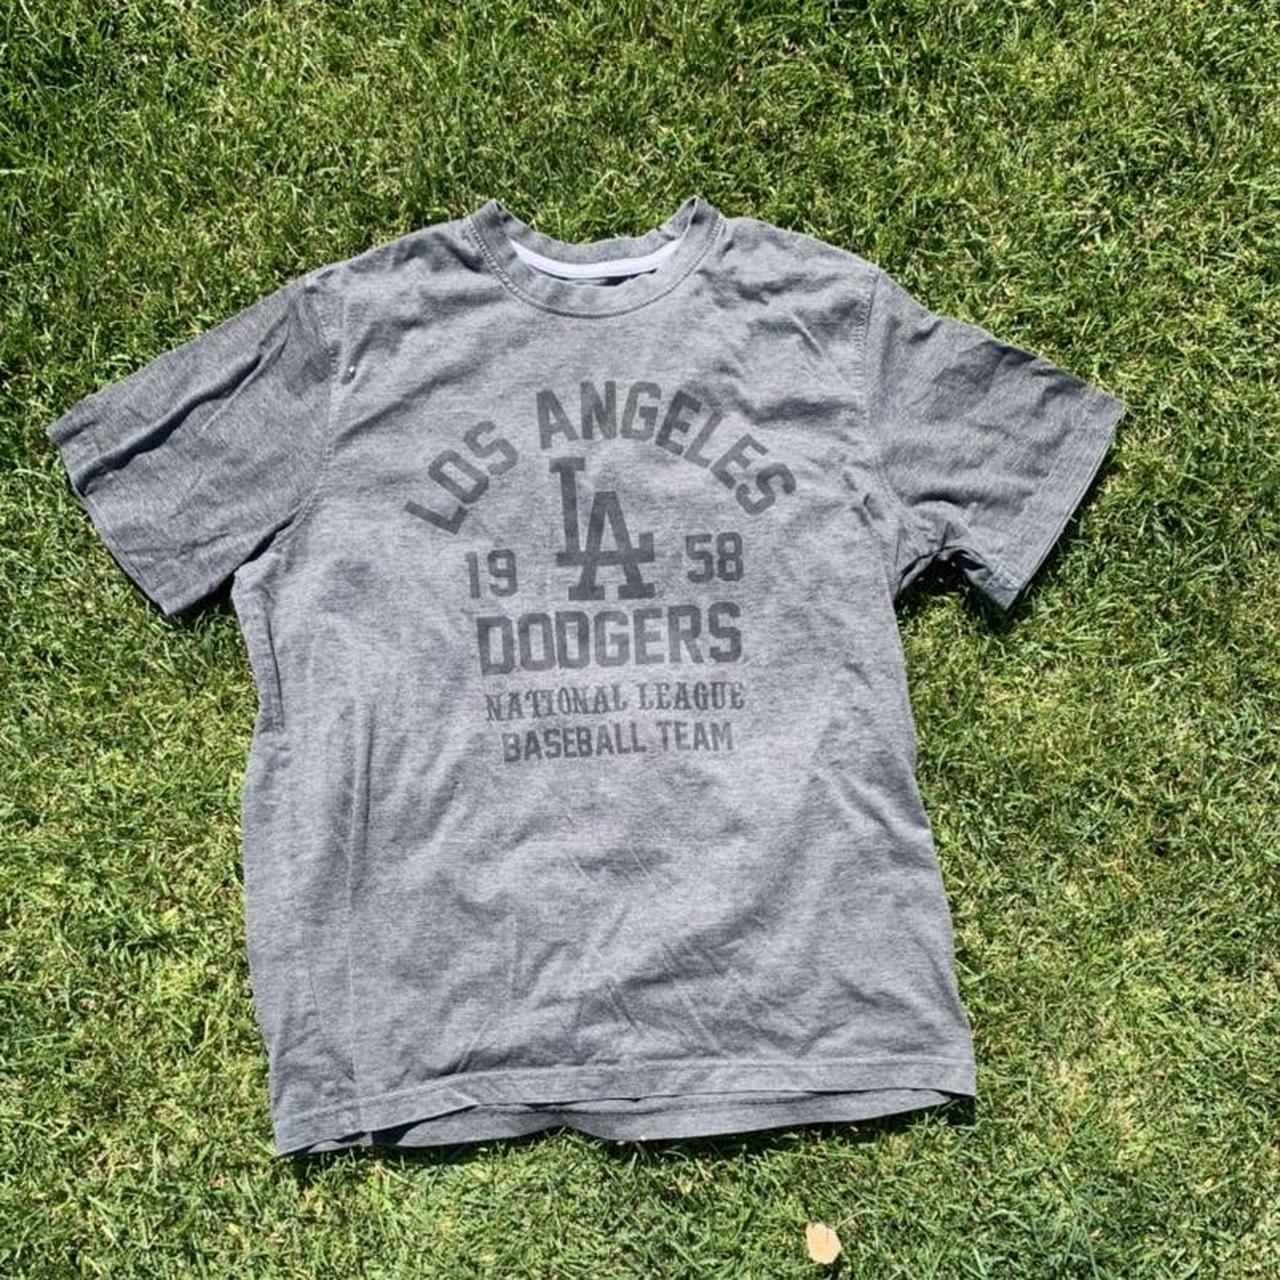 La Dodgers Shirt Mens 3xl Thrashed Repairs and Color - Depop